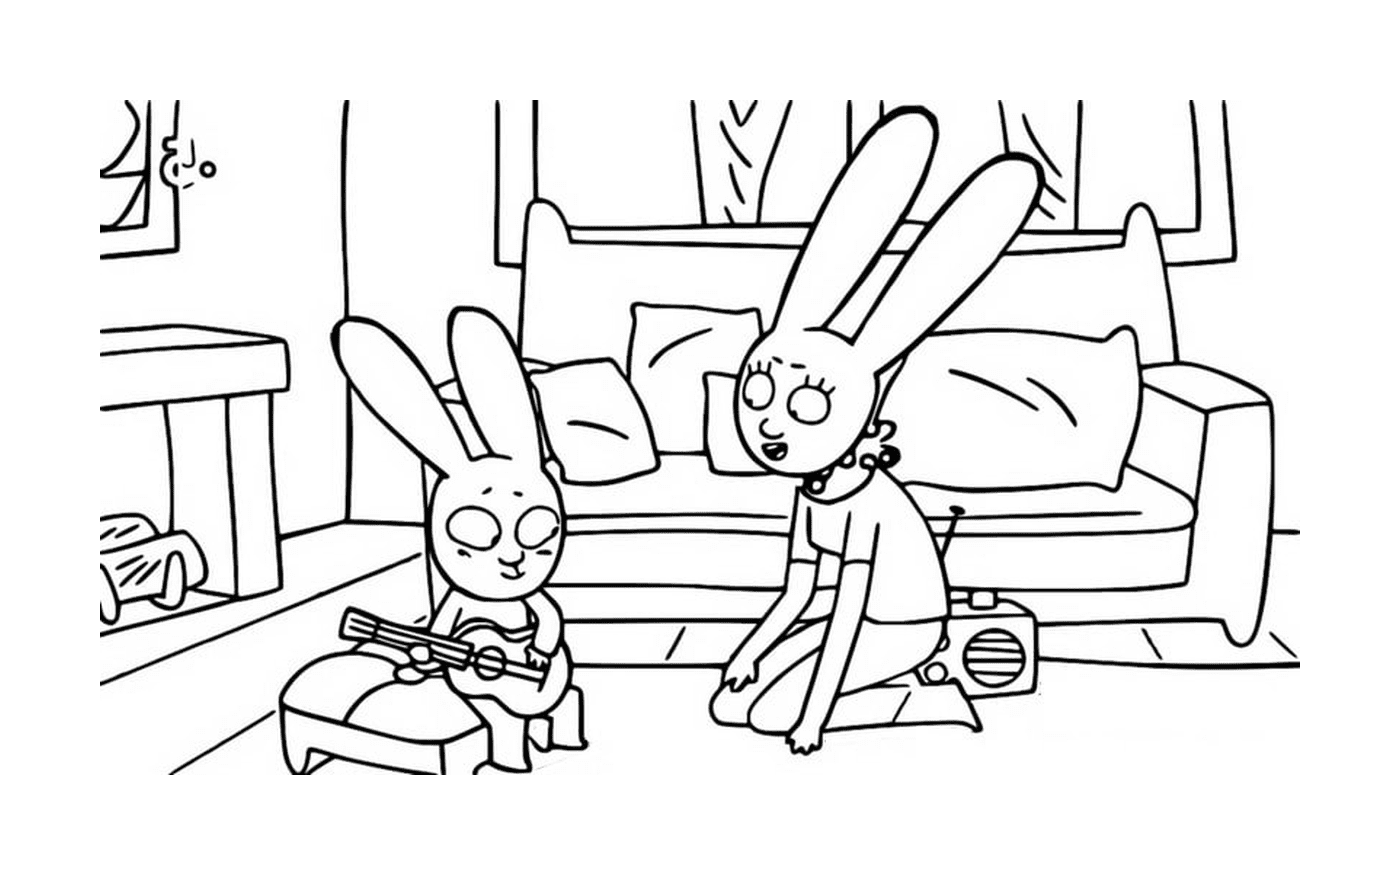  西蒙和兔子音乐家 